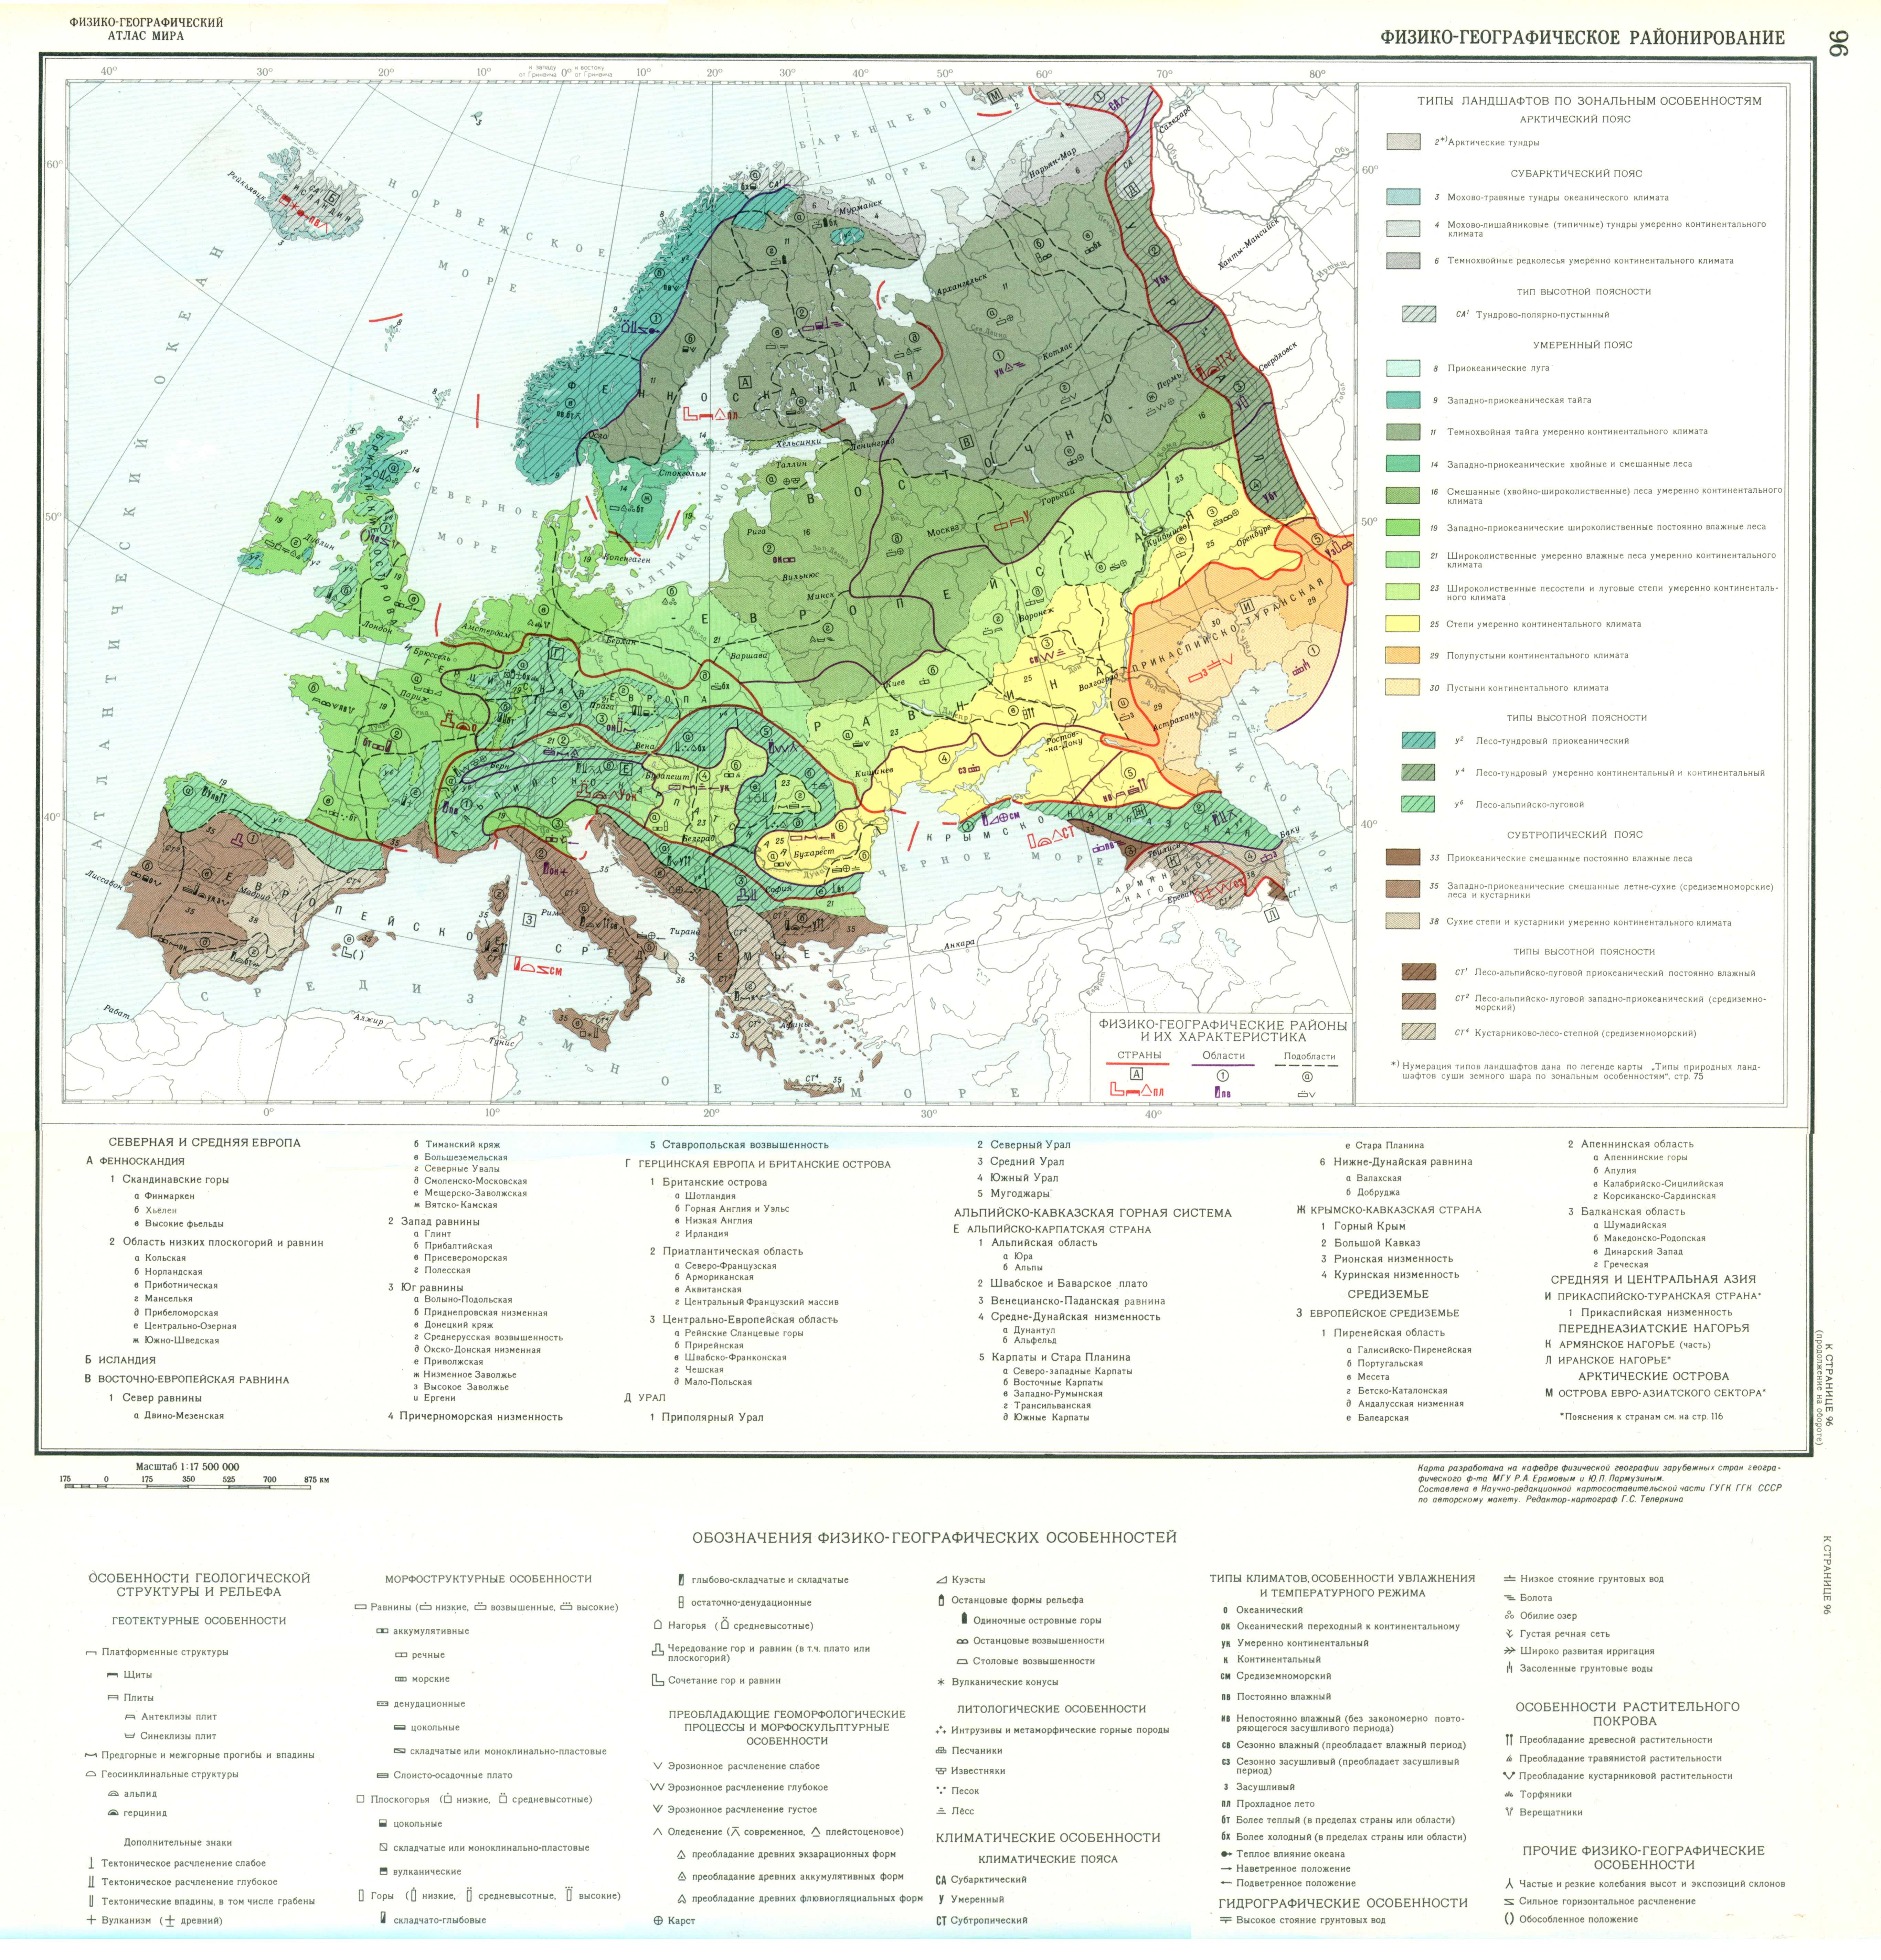 Какой природной зоны нет на европейском юге. Физико-географическое районирование зарубежной Европы карта-. Карта природных зон Европы. Природные зоны Западной Европы карта. Физико-географического районирования Европы таблица.